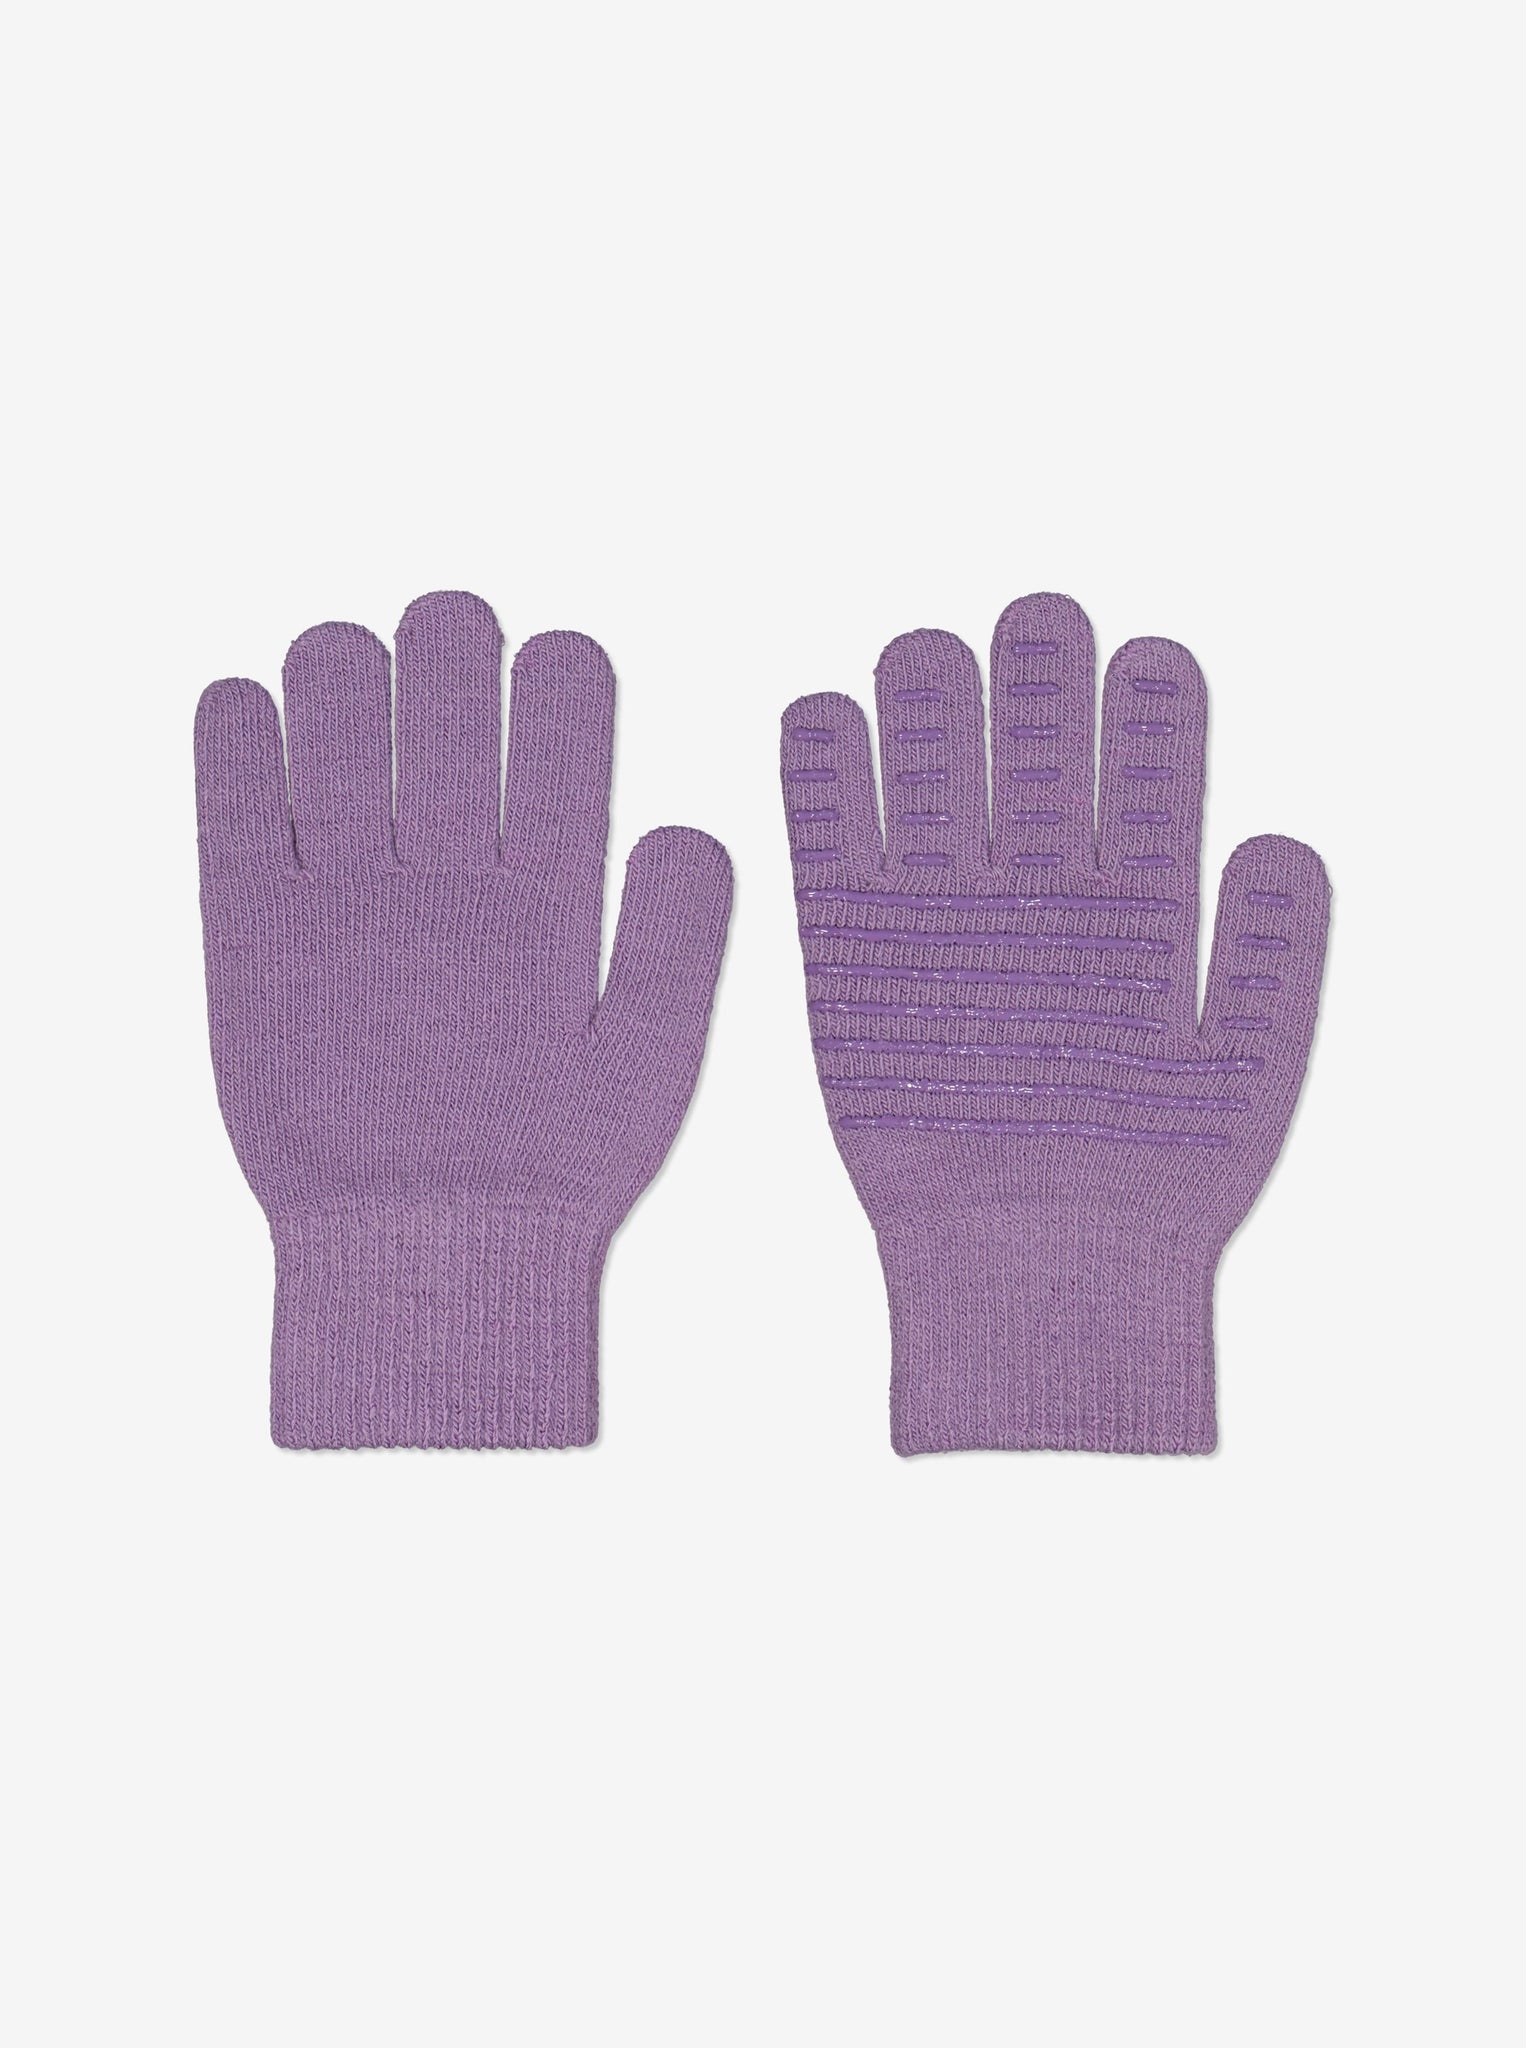 Purple Kids Magic Gloves from Polarn O. Pyret Kidswear. 